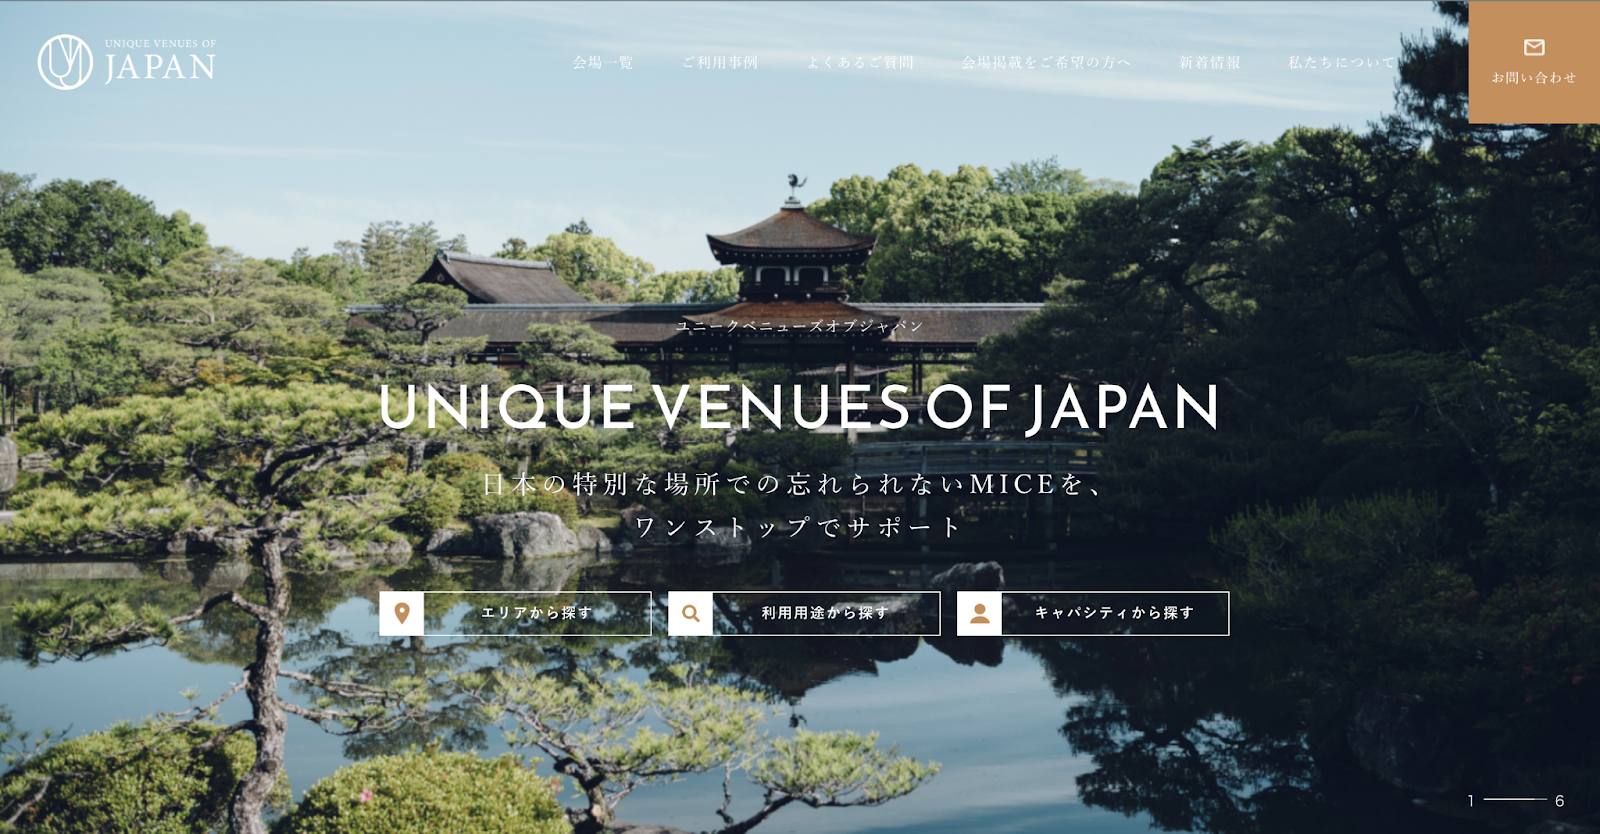 yVMG HOTELS & UNIQUE VENUESzMICEƊE̐V|[^TCguUNIQUE VENUES OF JAPANvvI[vATCgɌfڂWJn